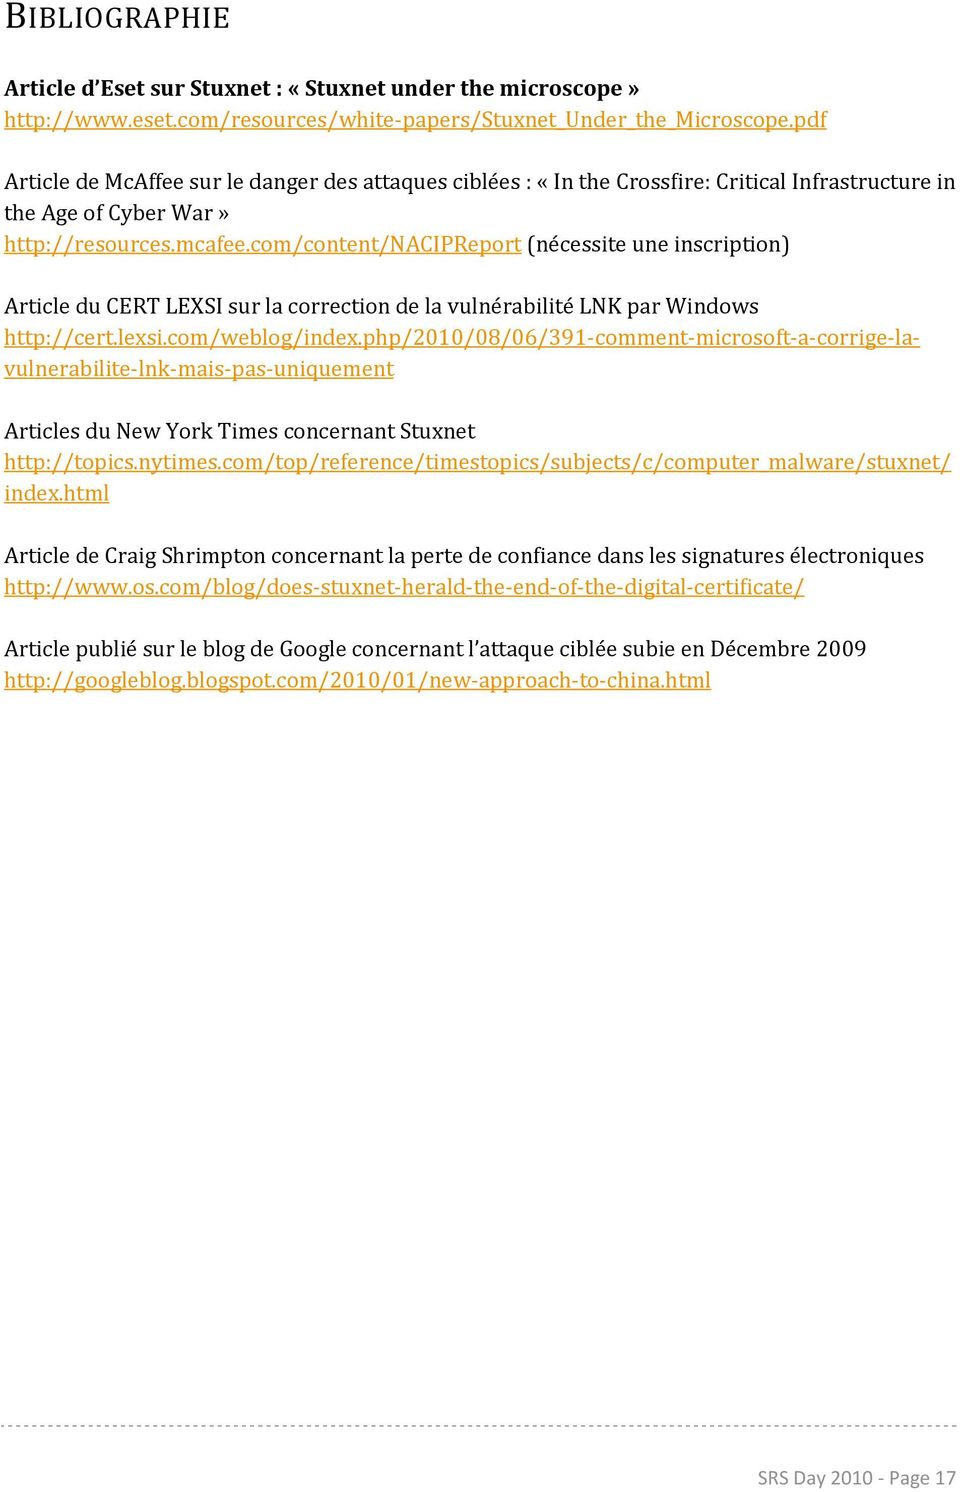 com/content/nacipreport (nécessite une inscription) Article du CERT LEXSI sur la correction de la vulnérabilité LNK par Windows http://cert.lexsi.com/weblog/index.